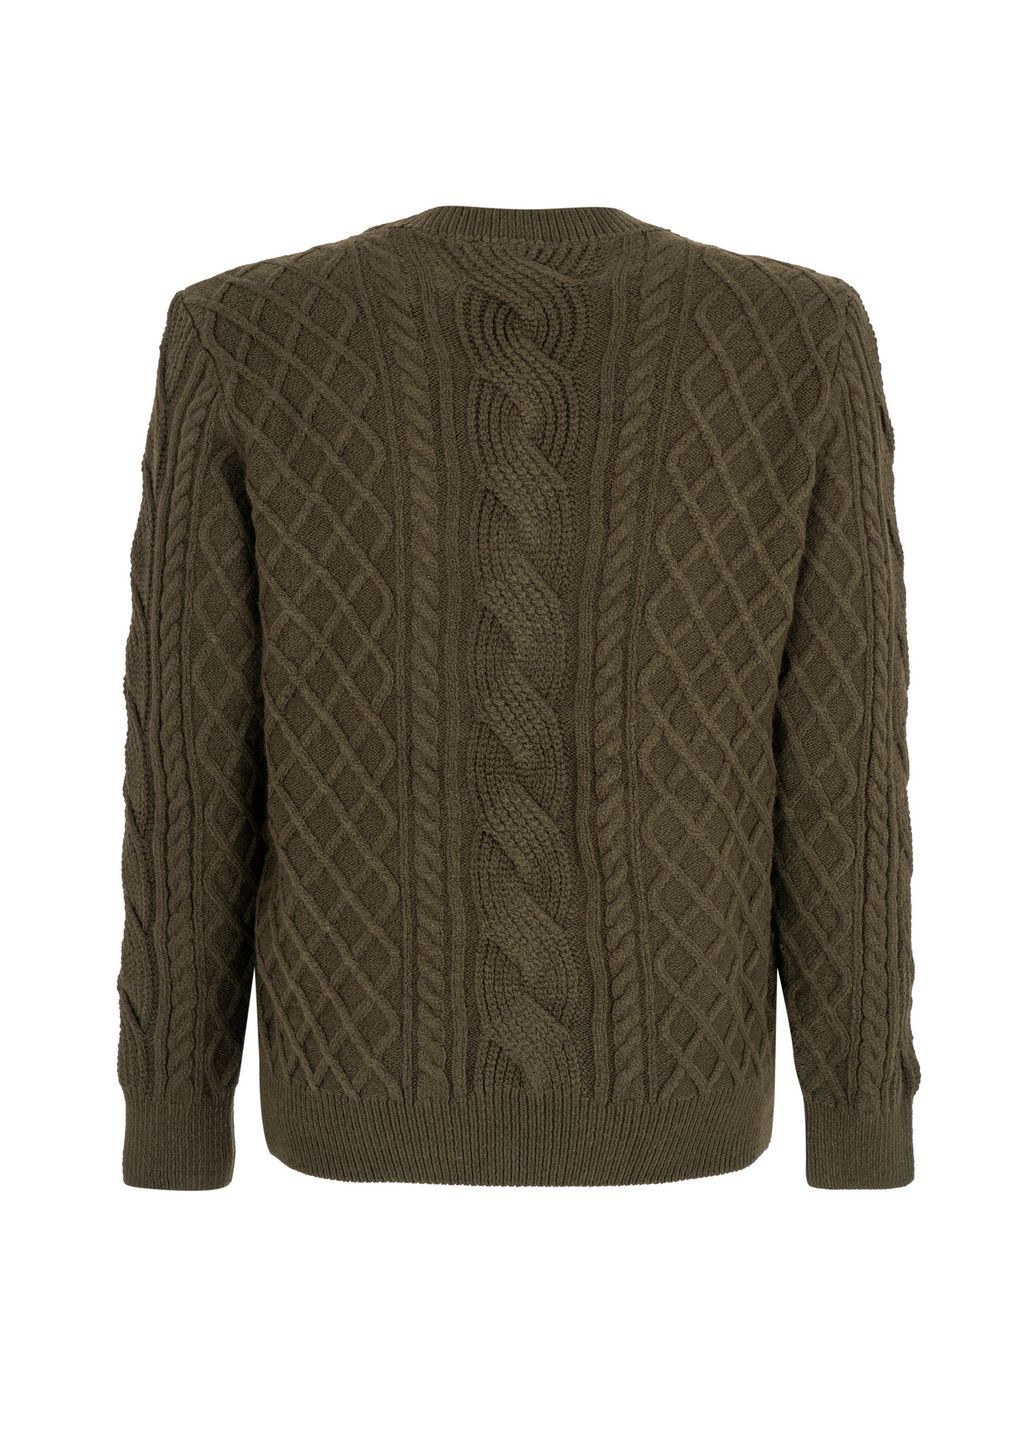 Зеленый демисезонный свитер джемпер NAVI